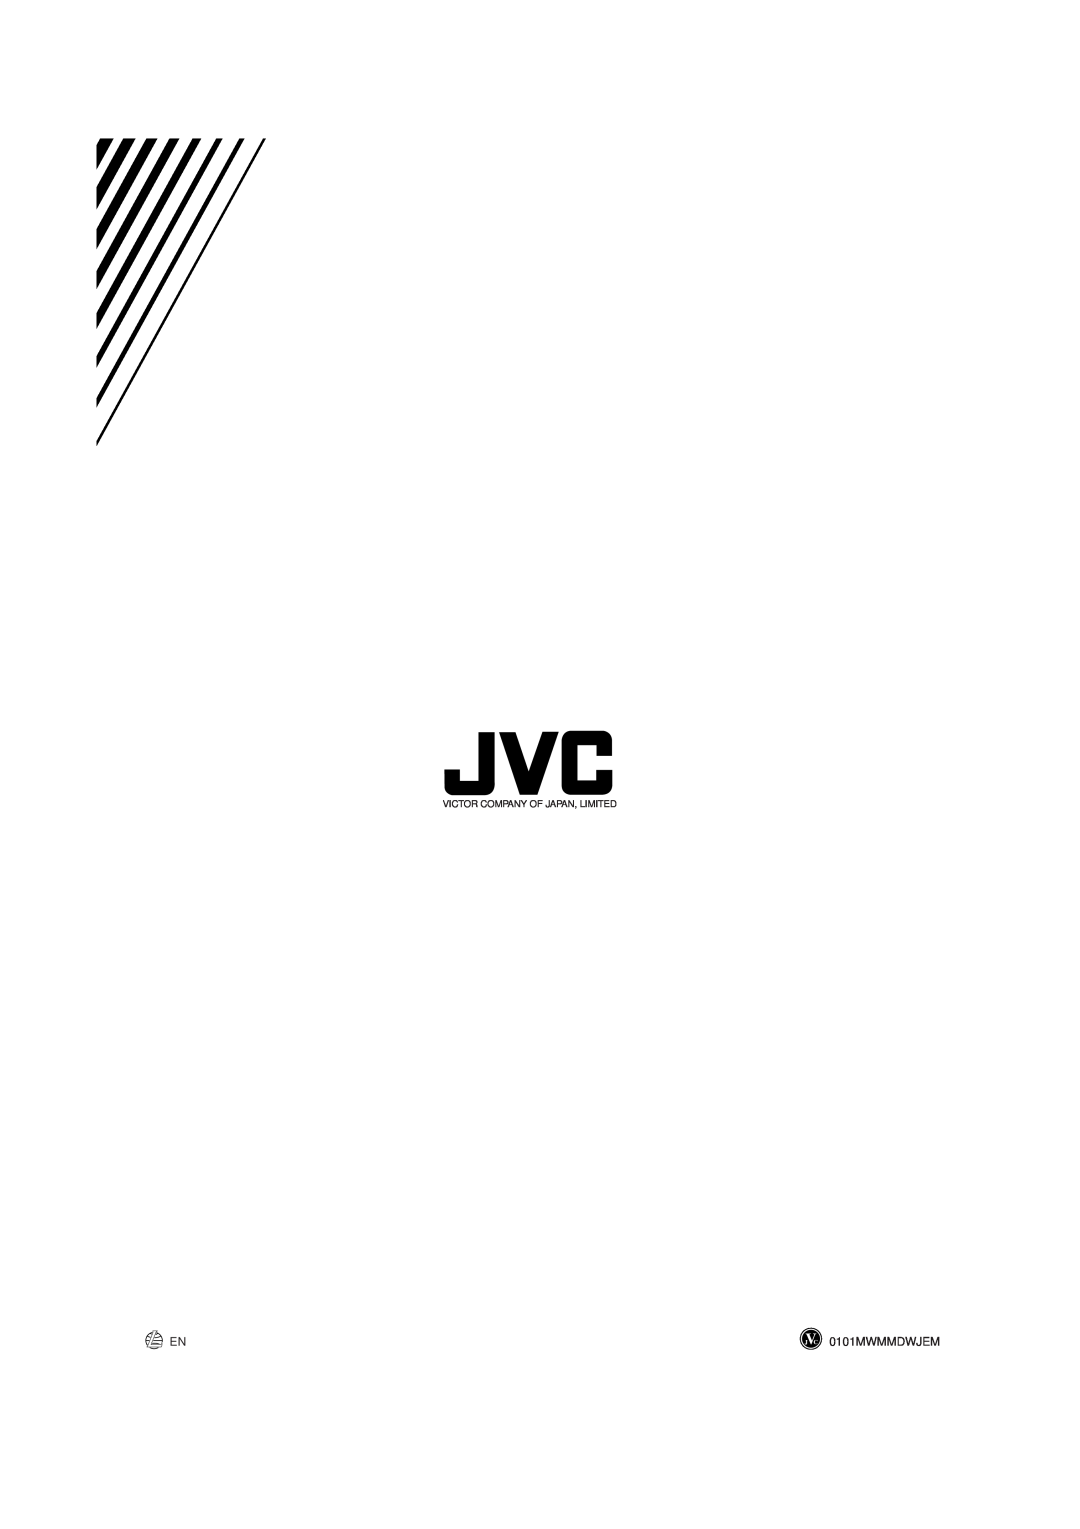 JVC MX-GT90 manual 0101MWMMDWJEM, Victor Company Of Japan, Limited 